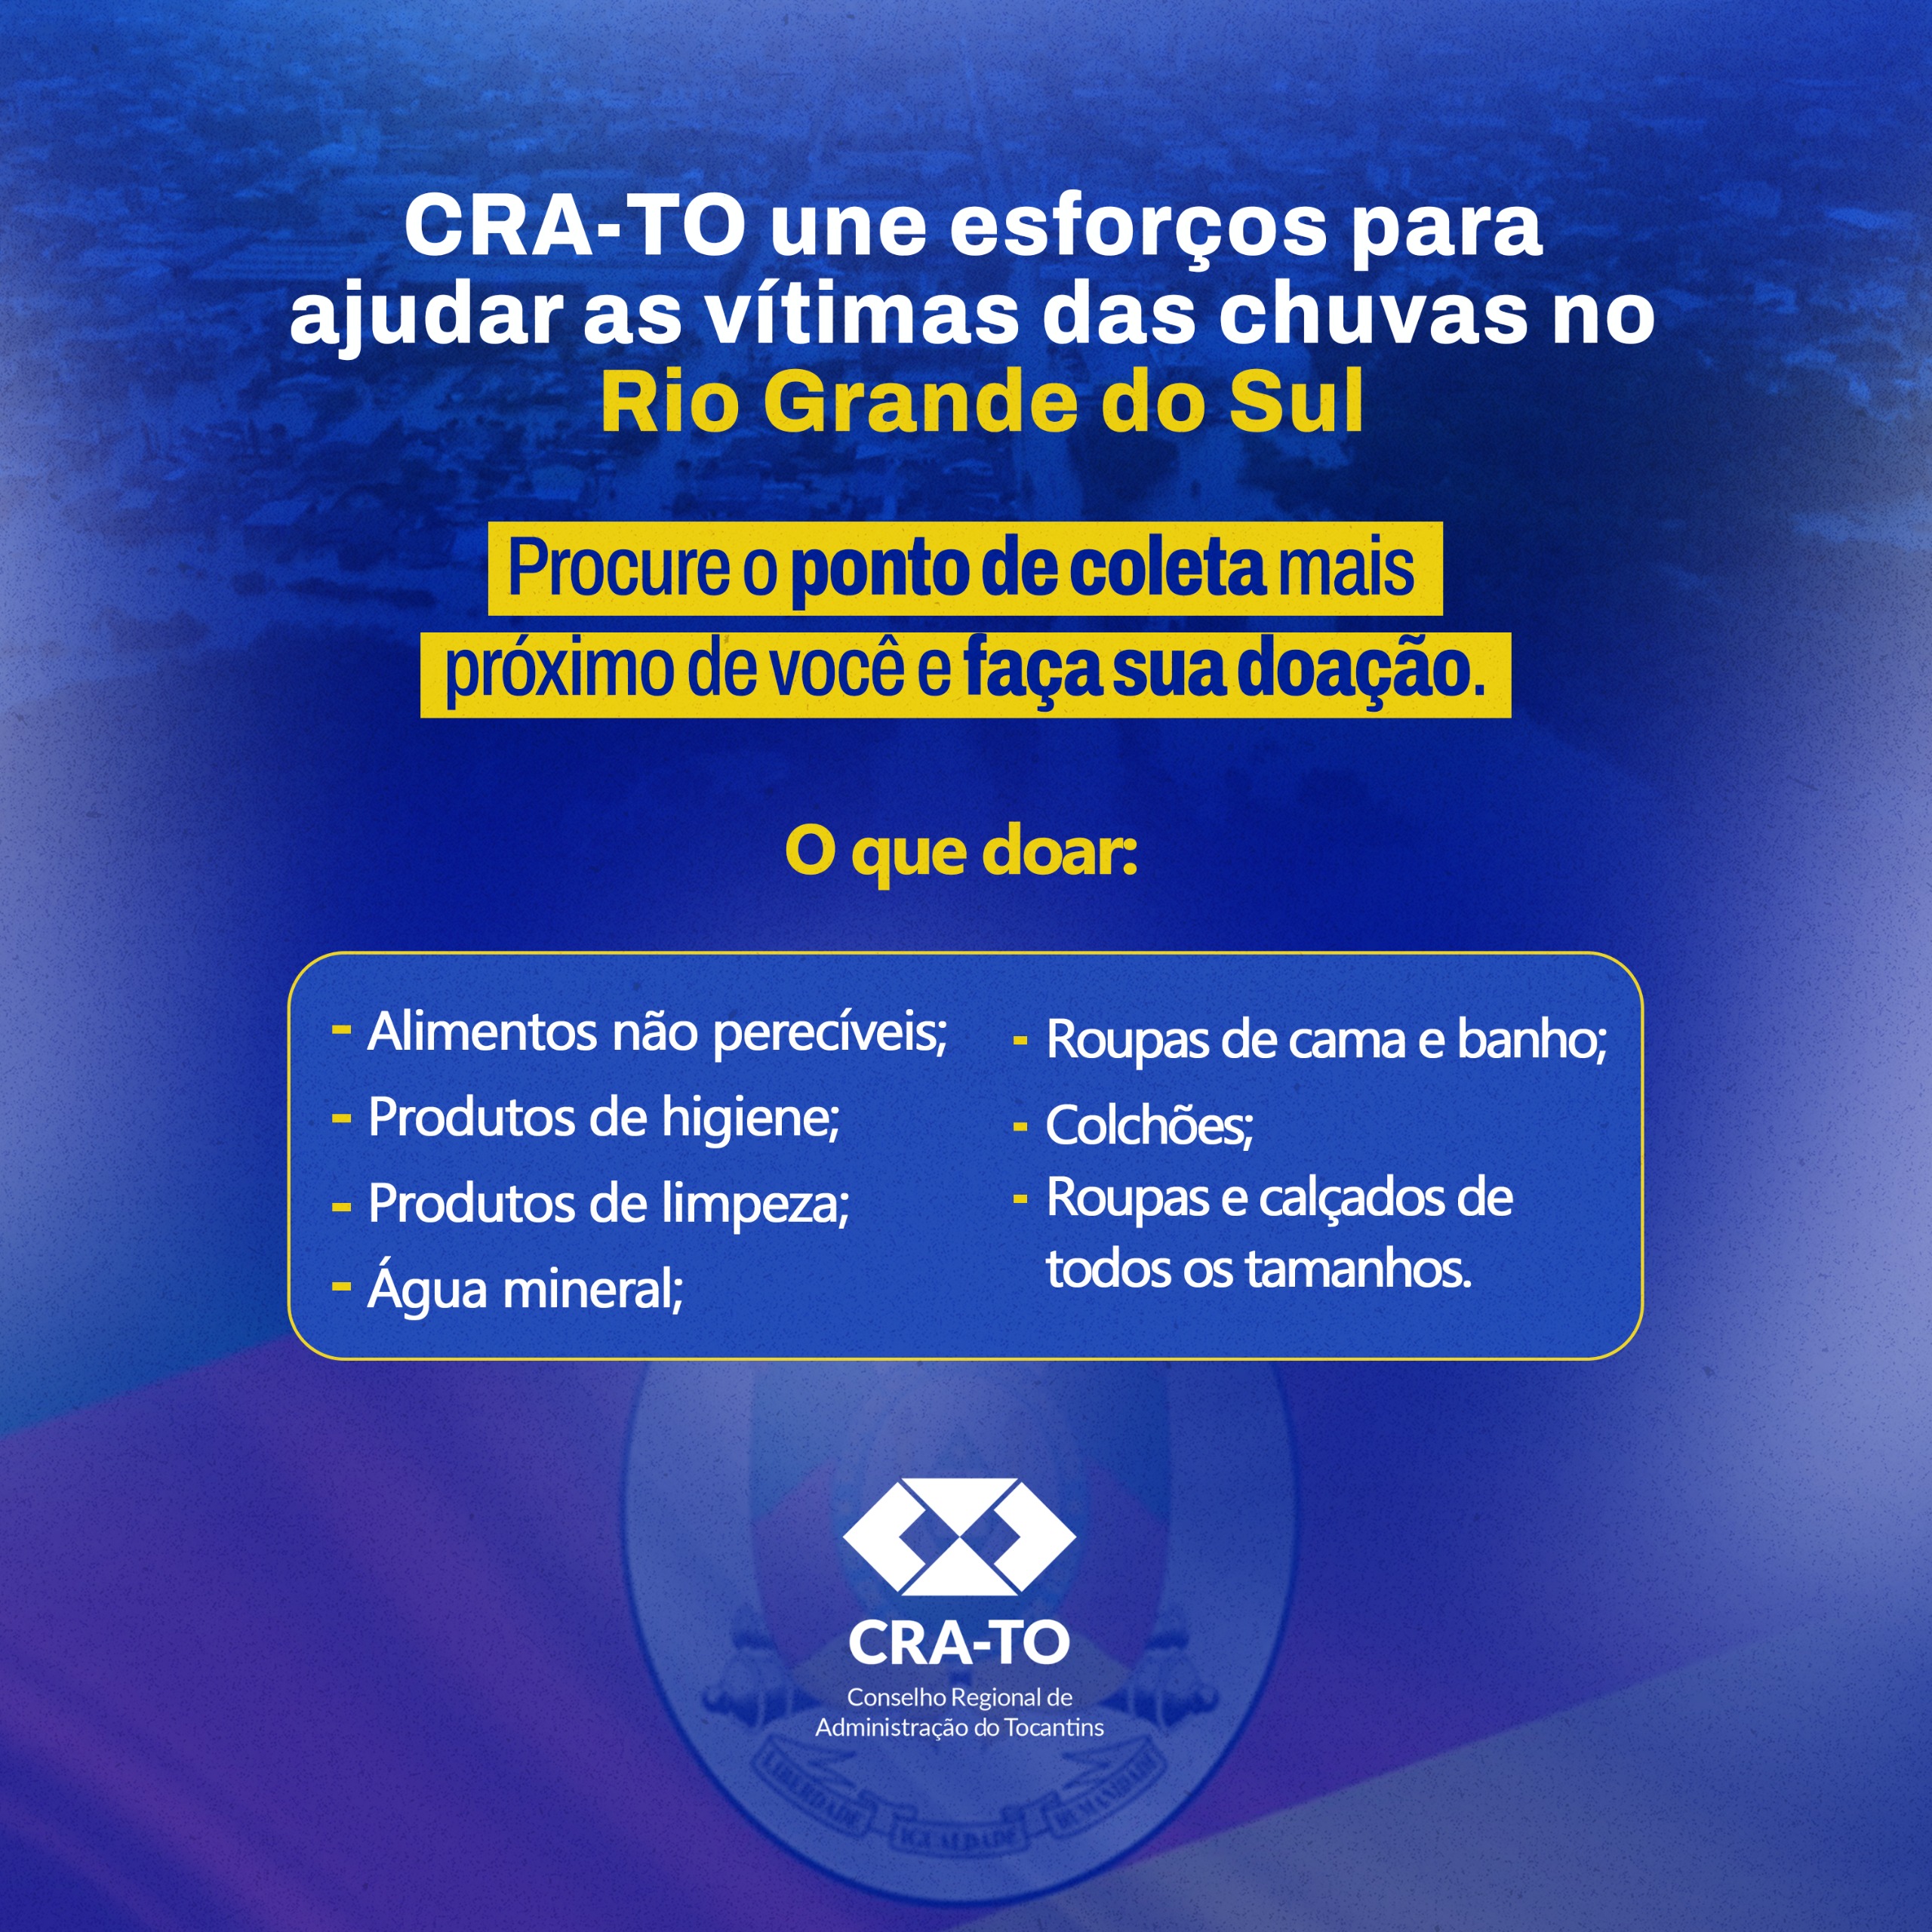 You are currently viewing CRA-TO divulga pontos de coleta de doações para ajudar vítimas das chuvas no Rio Grande do Sul